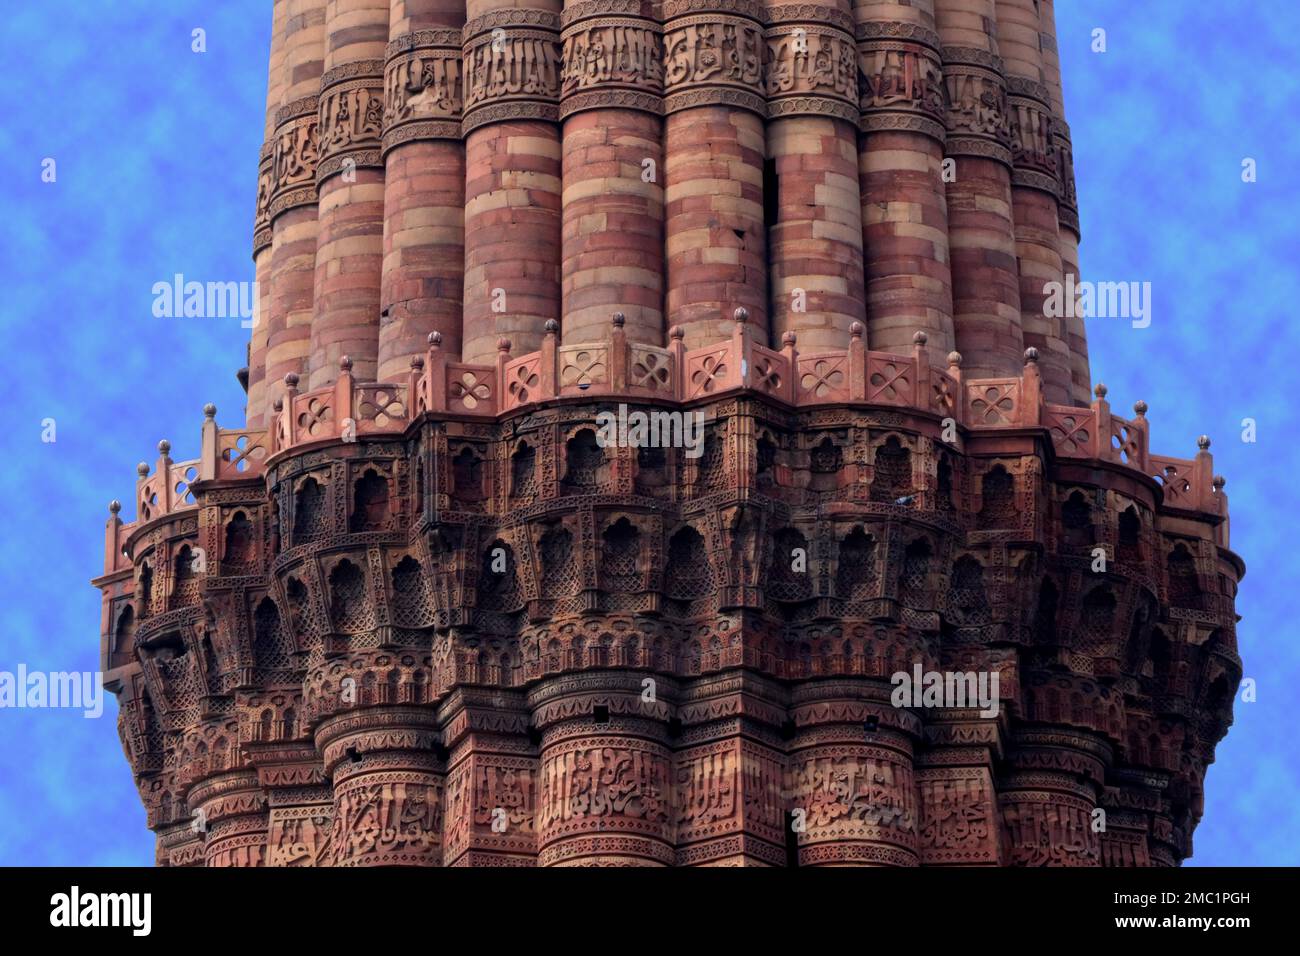 Der Balkon des Siegesturms, der islamischen Architektur von Indo, des UNESCO-Weltkulturerbes, Qutab Minar, Neu-Delhi, Indien Stockfoto